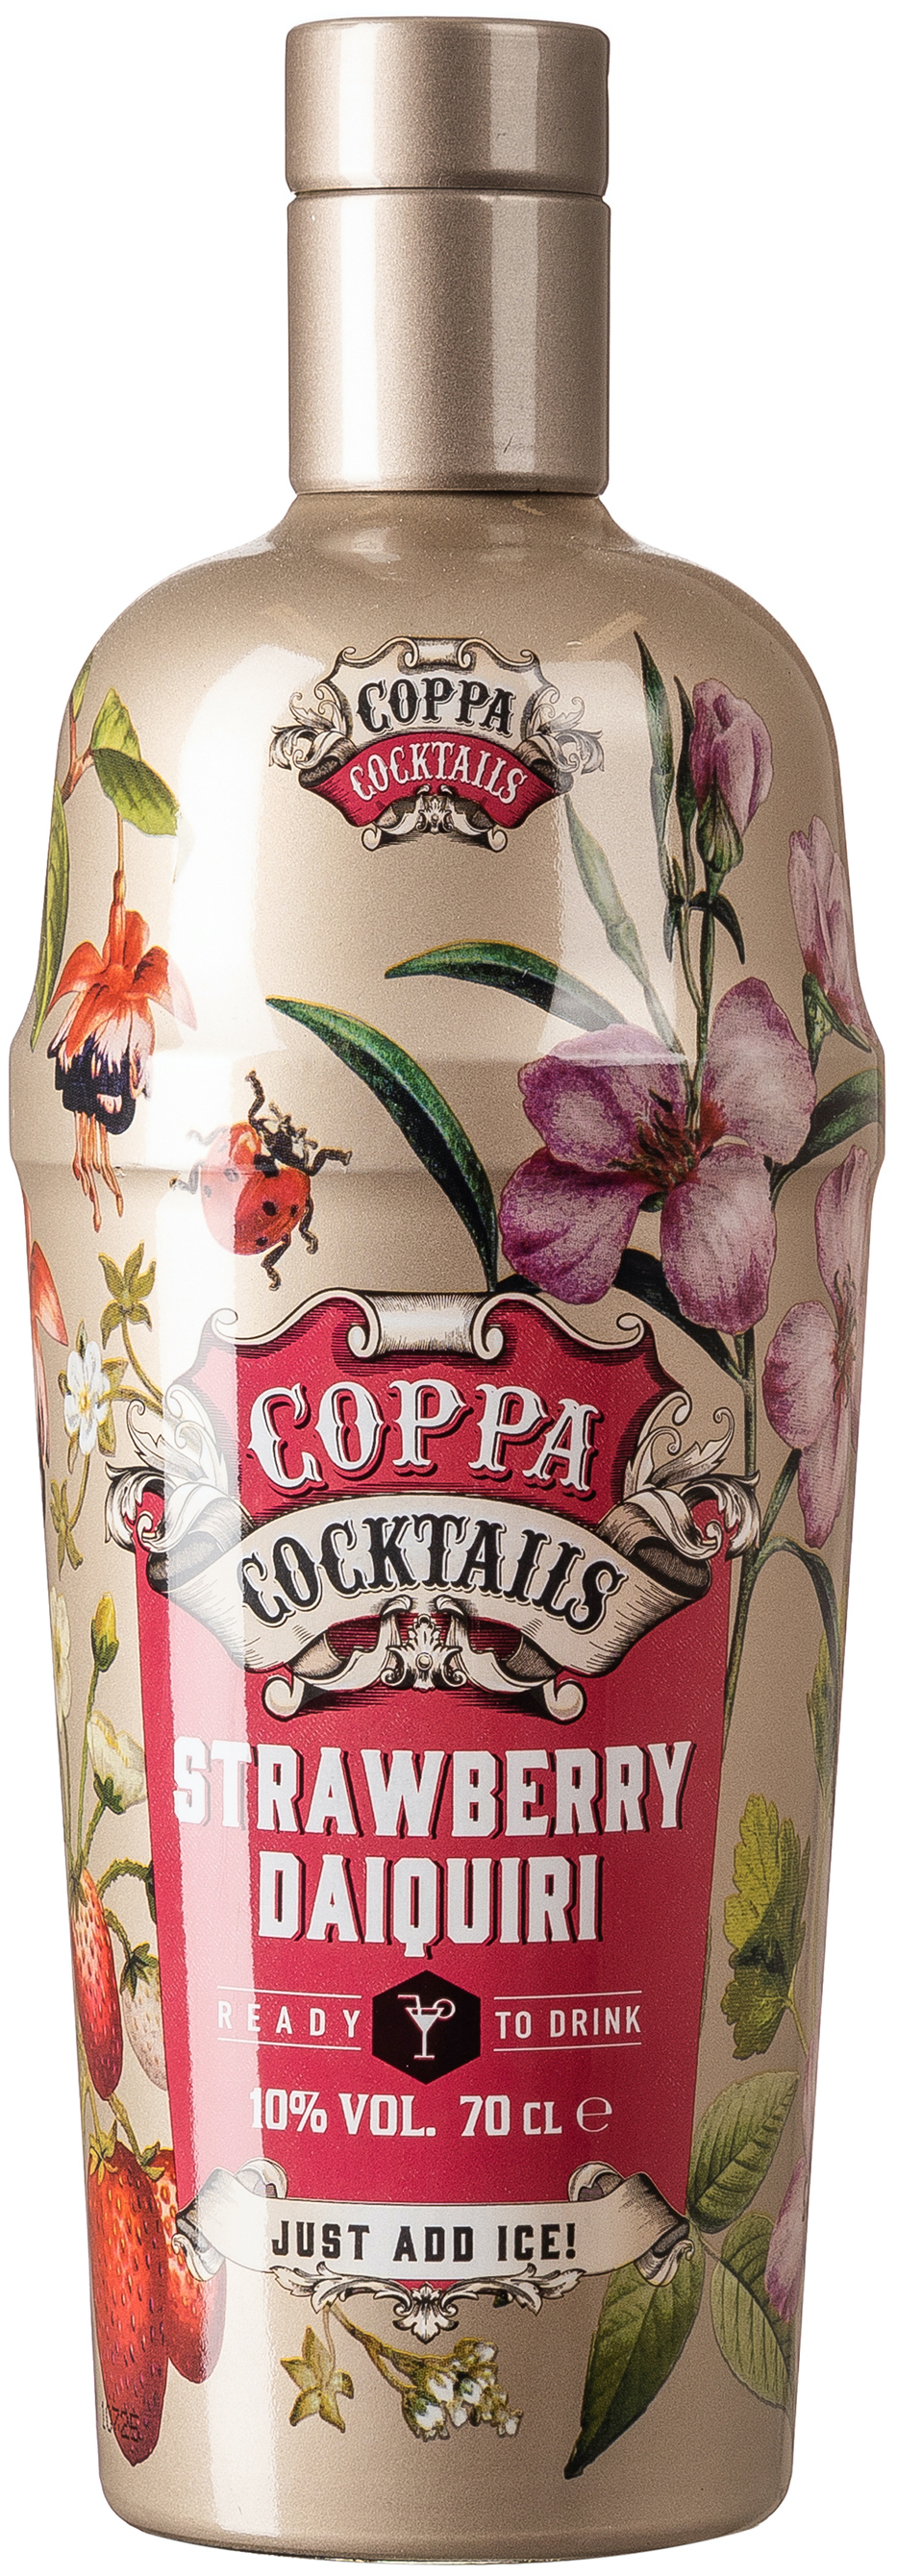 Coppa Cocktails Strawberry Daiquiri 10% vol. 0,7 L